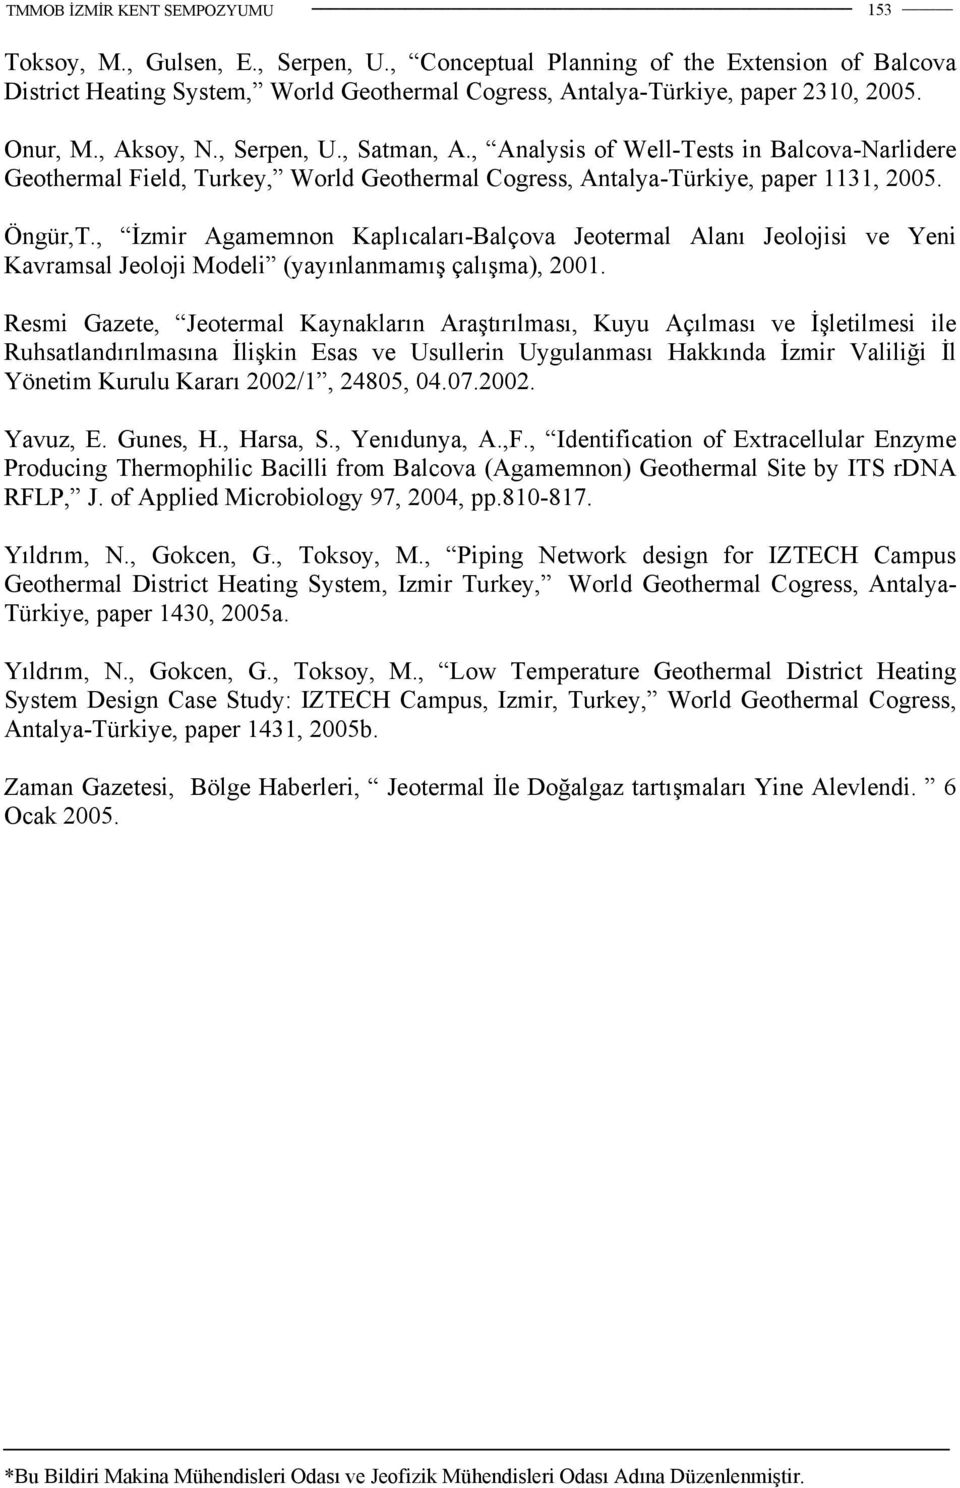 , İzmir Agamemnon Kaplıcaları-Balçova Jeotermal Alanı Jeolojisi ve Yeni Kavramsal Jeoloji Modeli (yayınlanmamış çalışma), 2001.